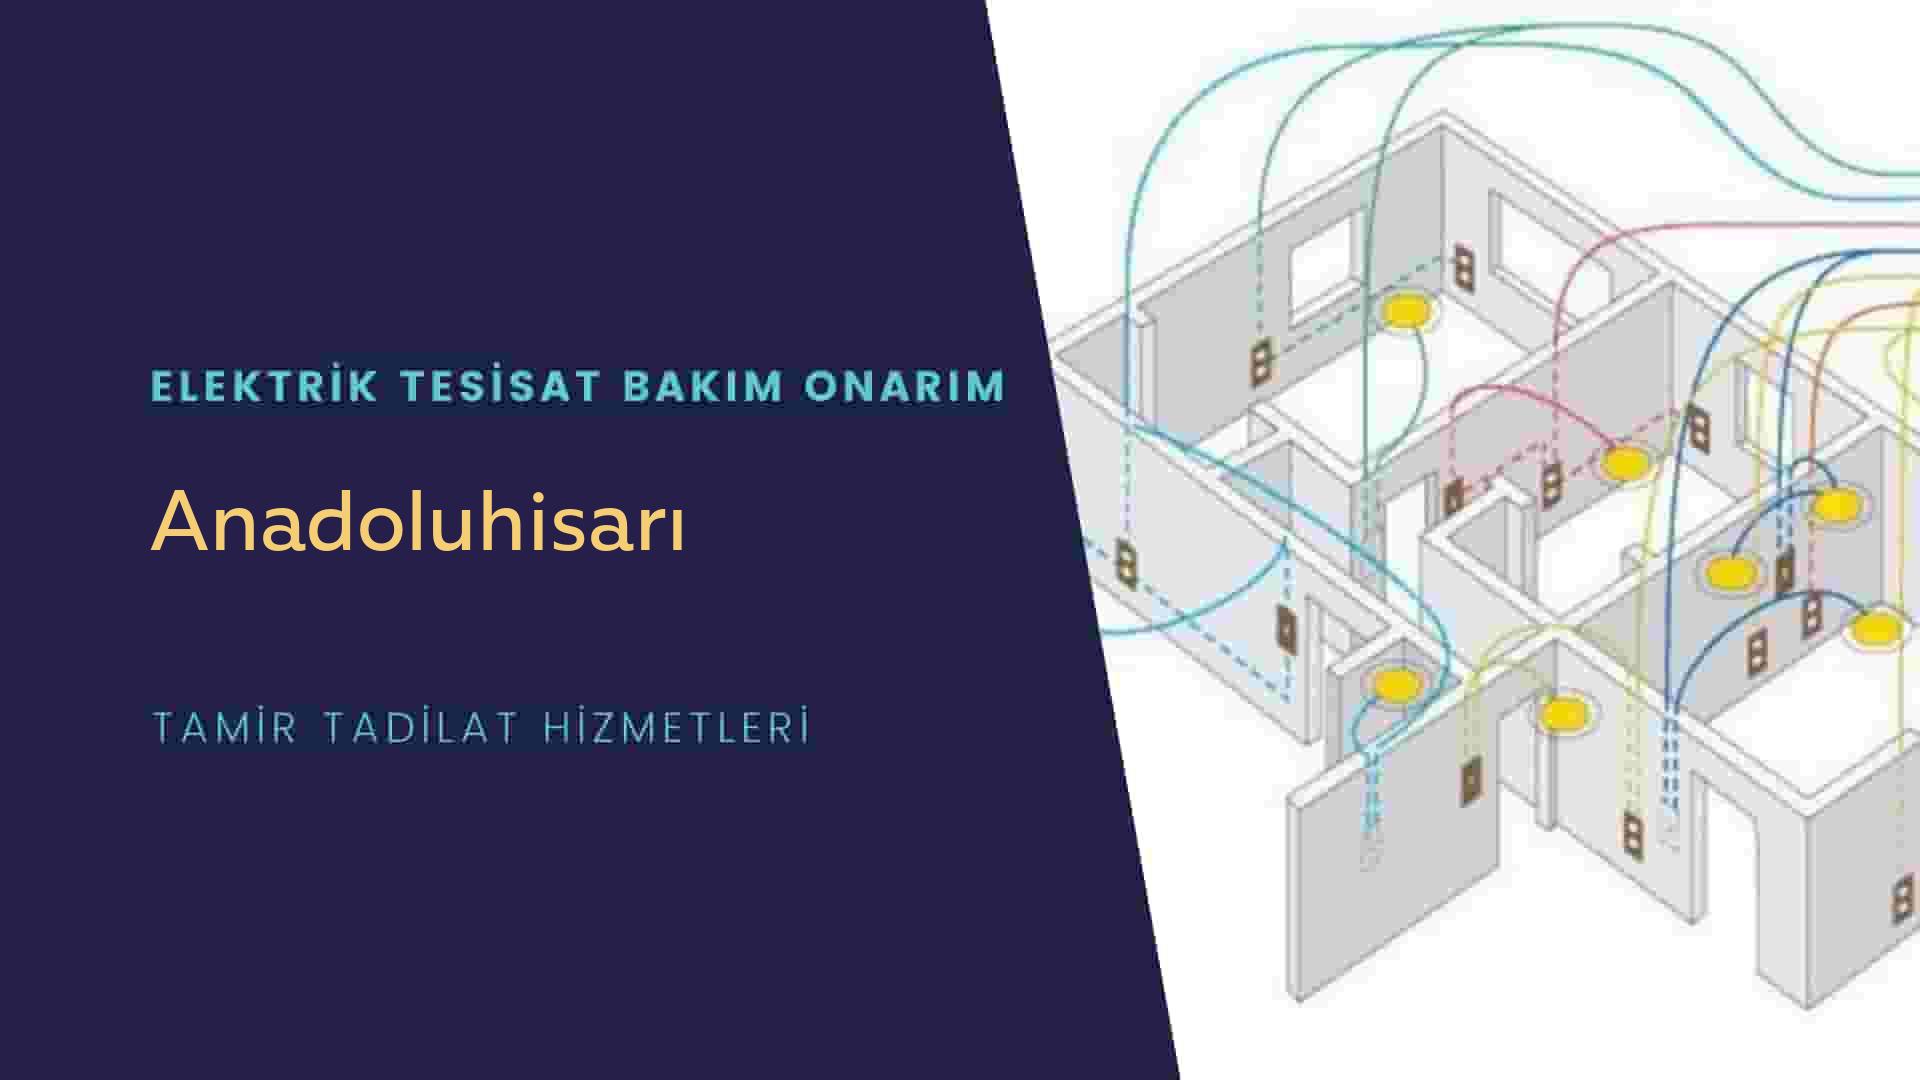 Anadoluhisarı'da elektrik tesisatı ustalarımı arıyorsunuz doğru adrestenizi Anadoluhisarı elektrik tesisatı ustalarımız 7/24 sizlere hizmet vermekten mutluluk duyar.